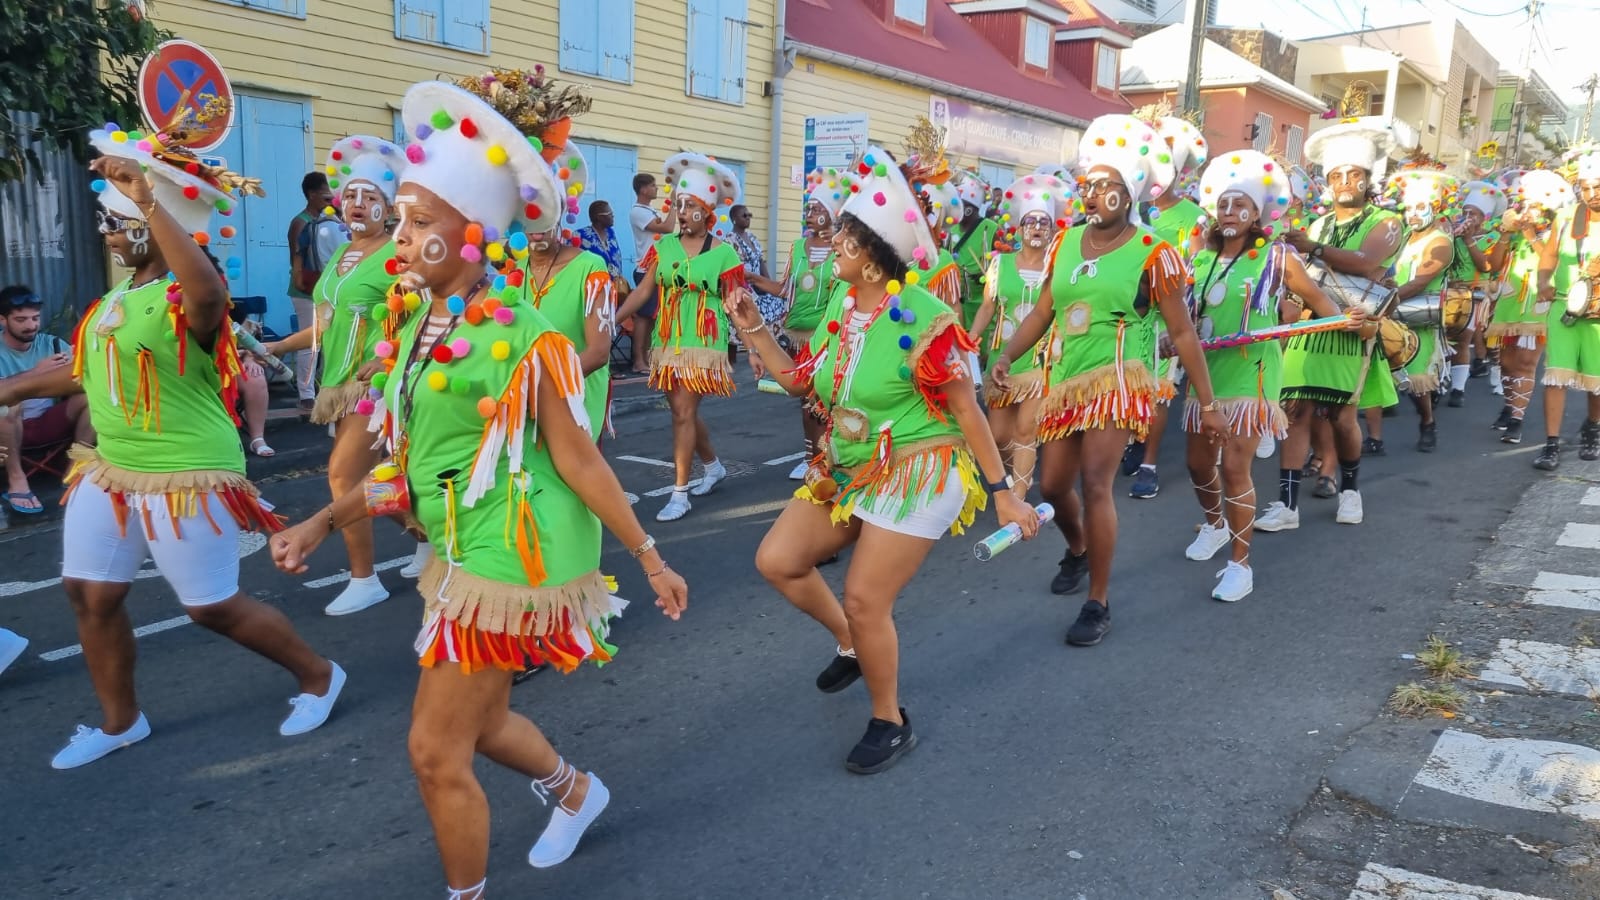     Aucun winner pour la giga-parade du Mardi gras 2023 à Basse-Terre

